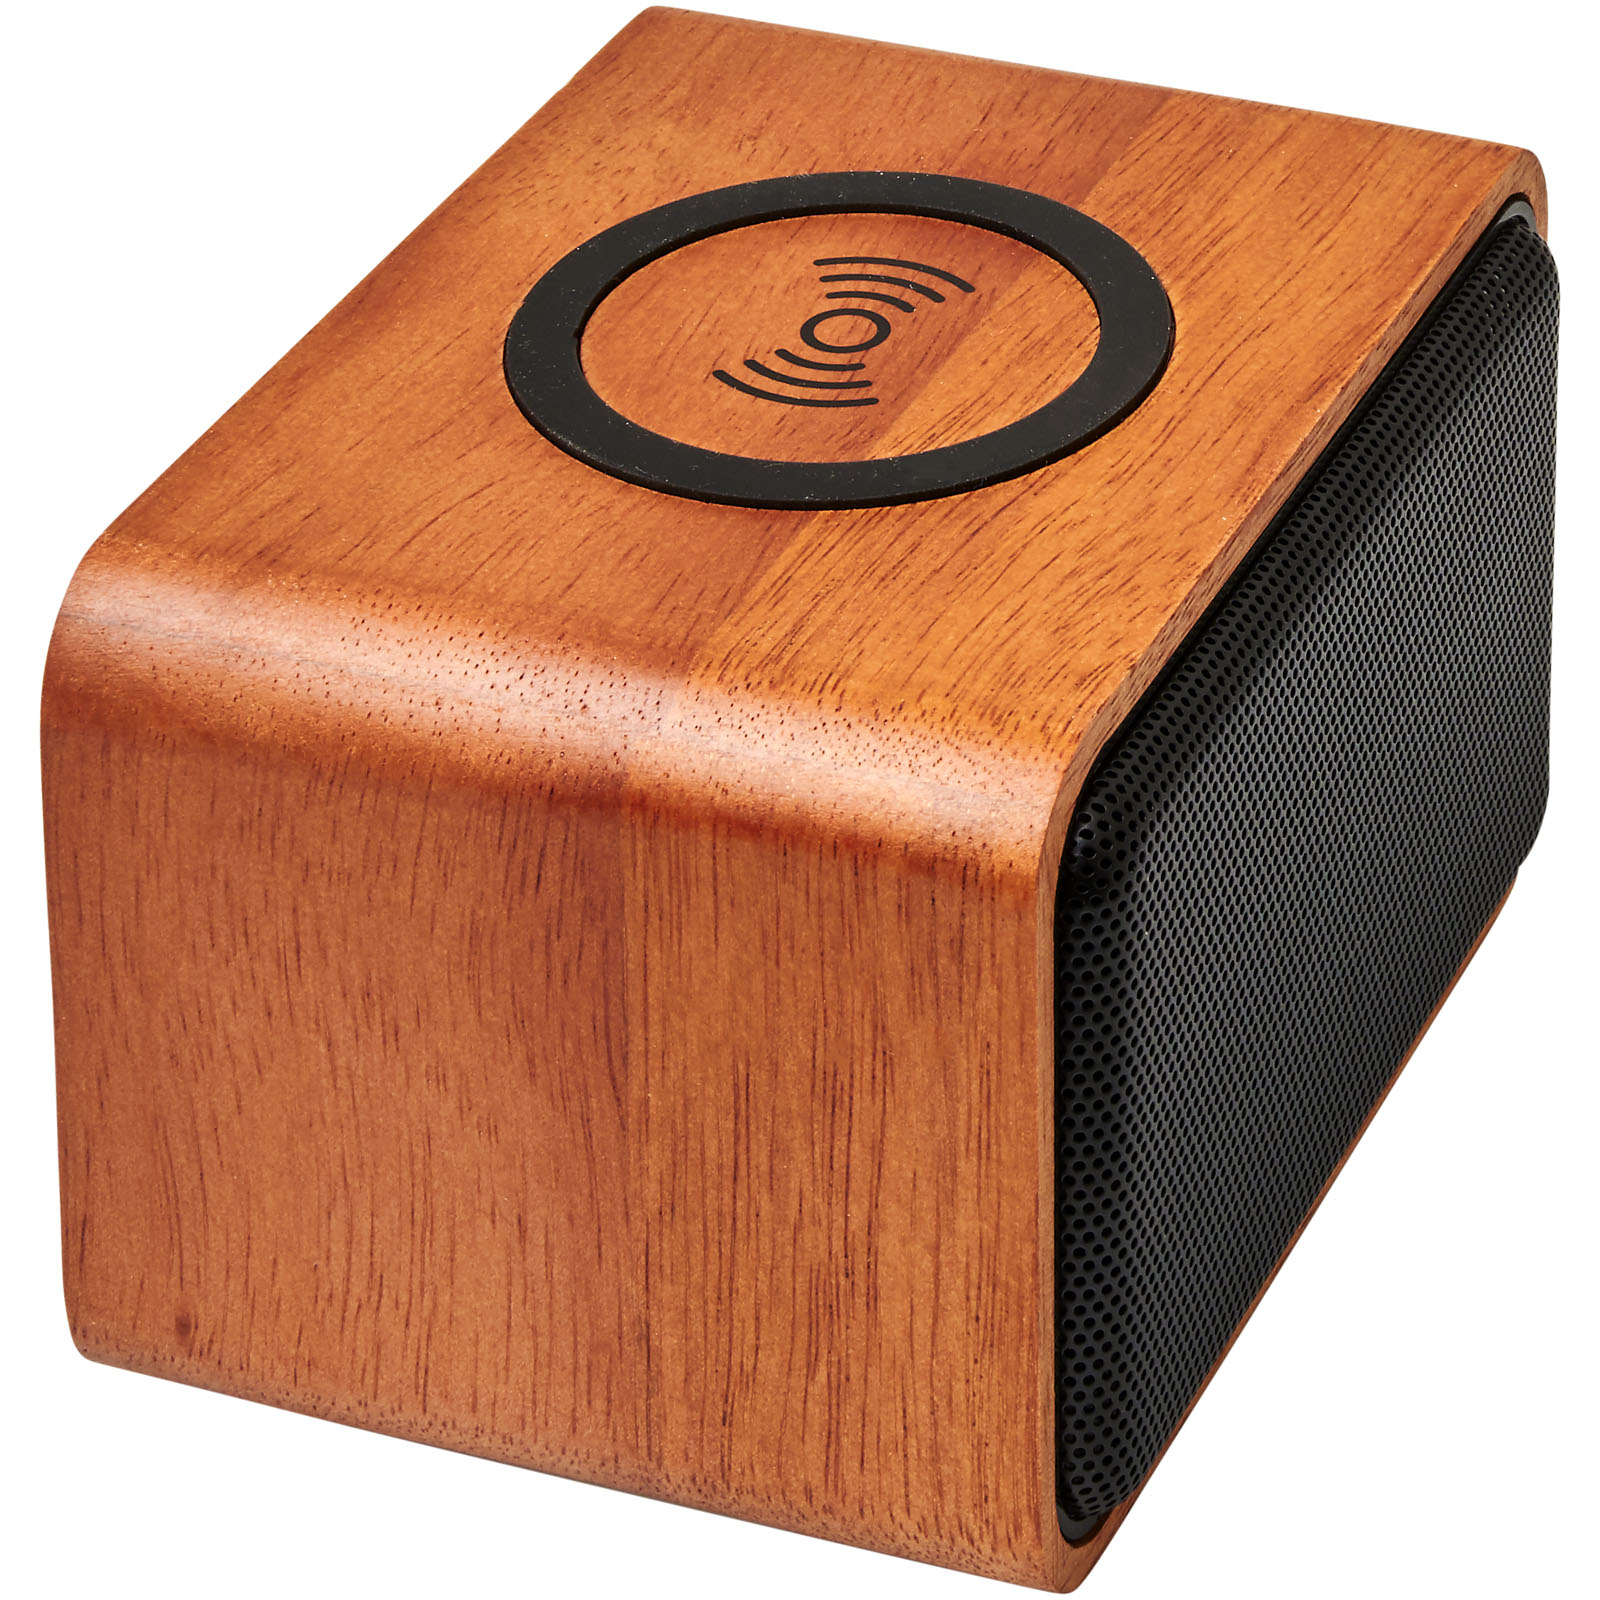 Chargeurs sans fil publicitaires - Enceinte Wooden avec chargeur à induction de 3 W - 5